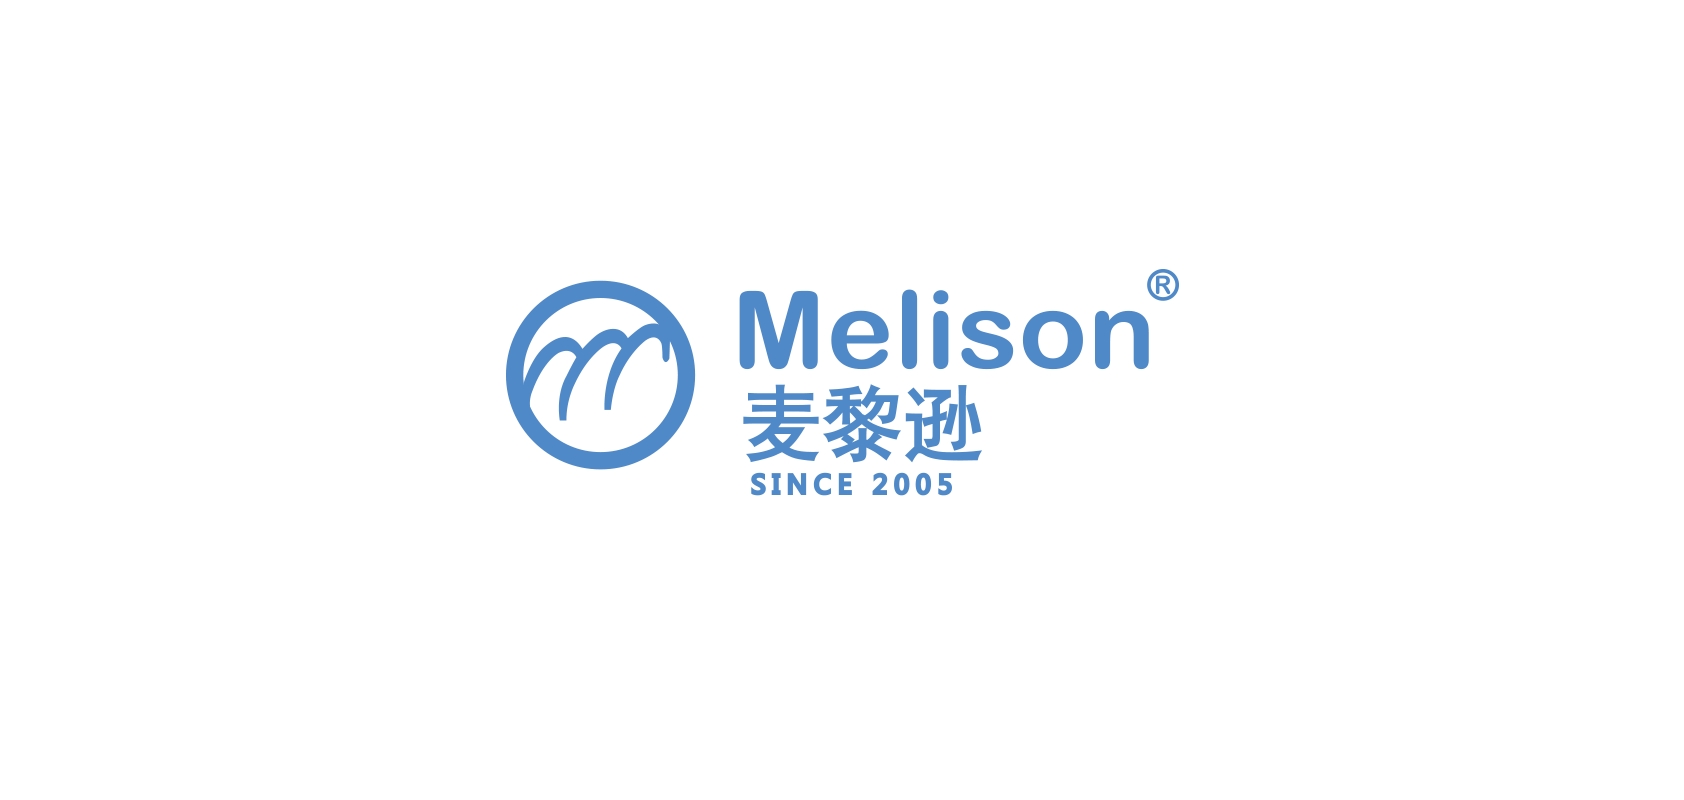 melison是什么牌子_麦黎逊家居品牌怎么样?